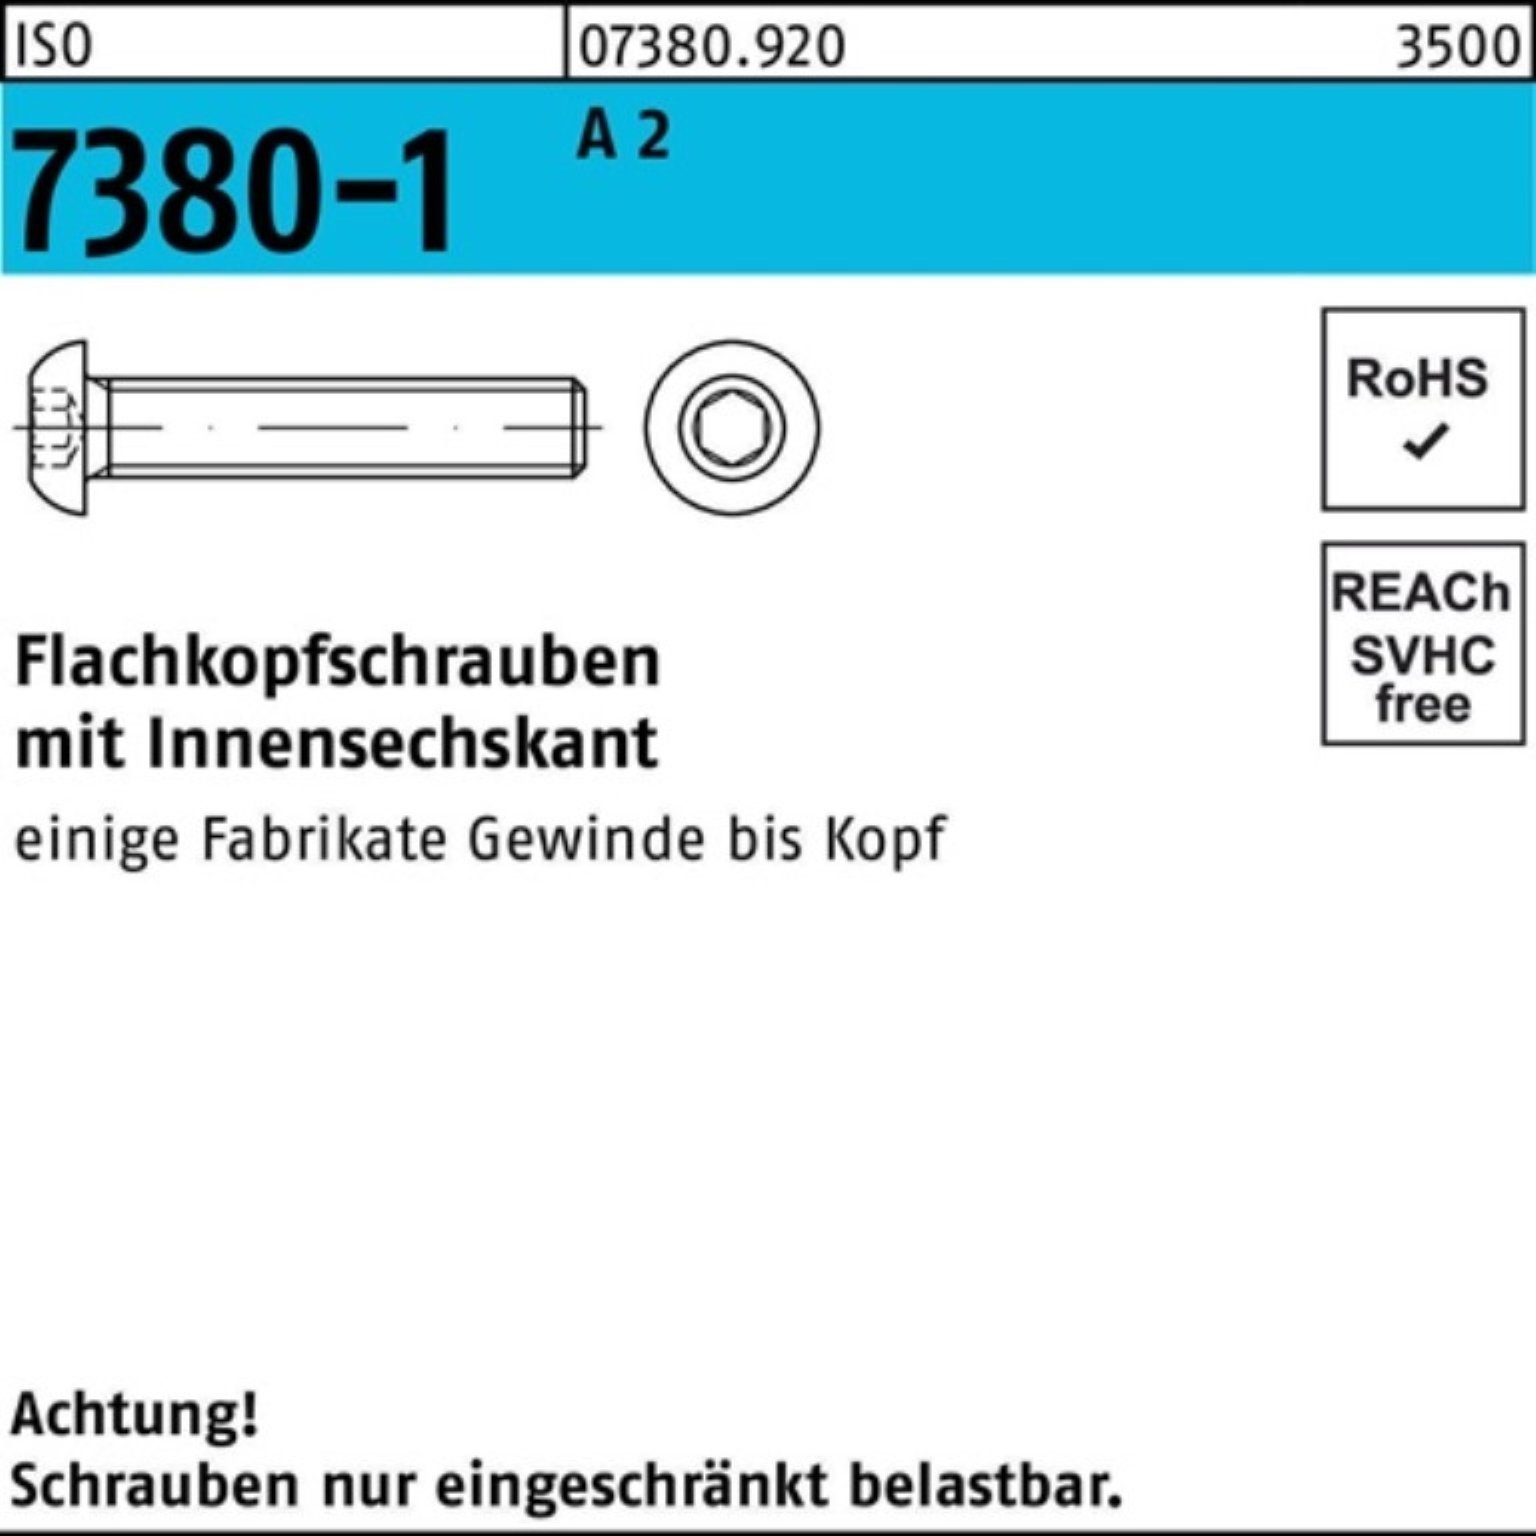 Reyher Schraube 500er Pack Flachkopfschraube A 2 7380-1 Stüc 500 ISO 20 Innen-6kt M5x